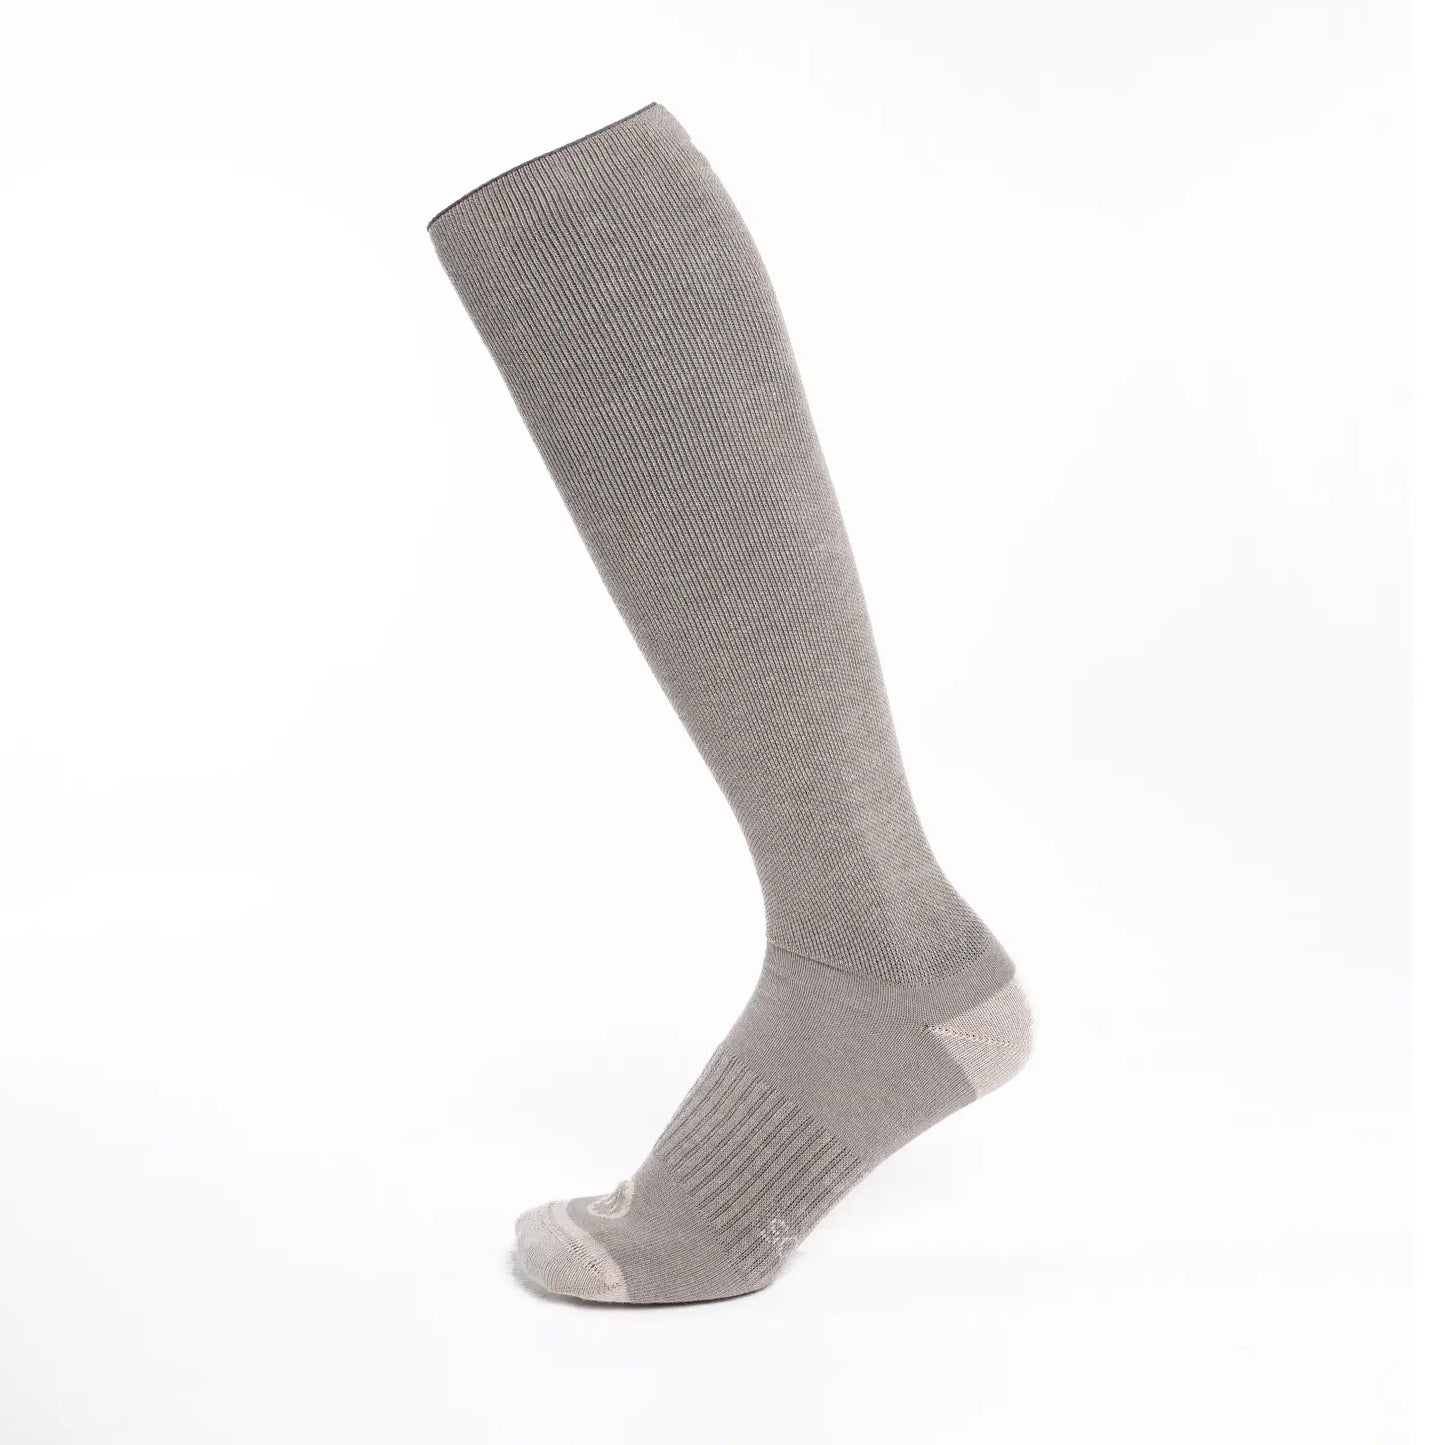 Calcetines de compresión de algodón, altos, color color gris y beige para hombre y mujer